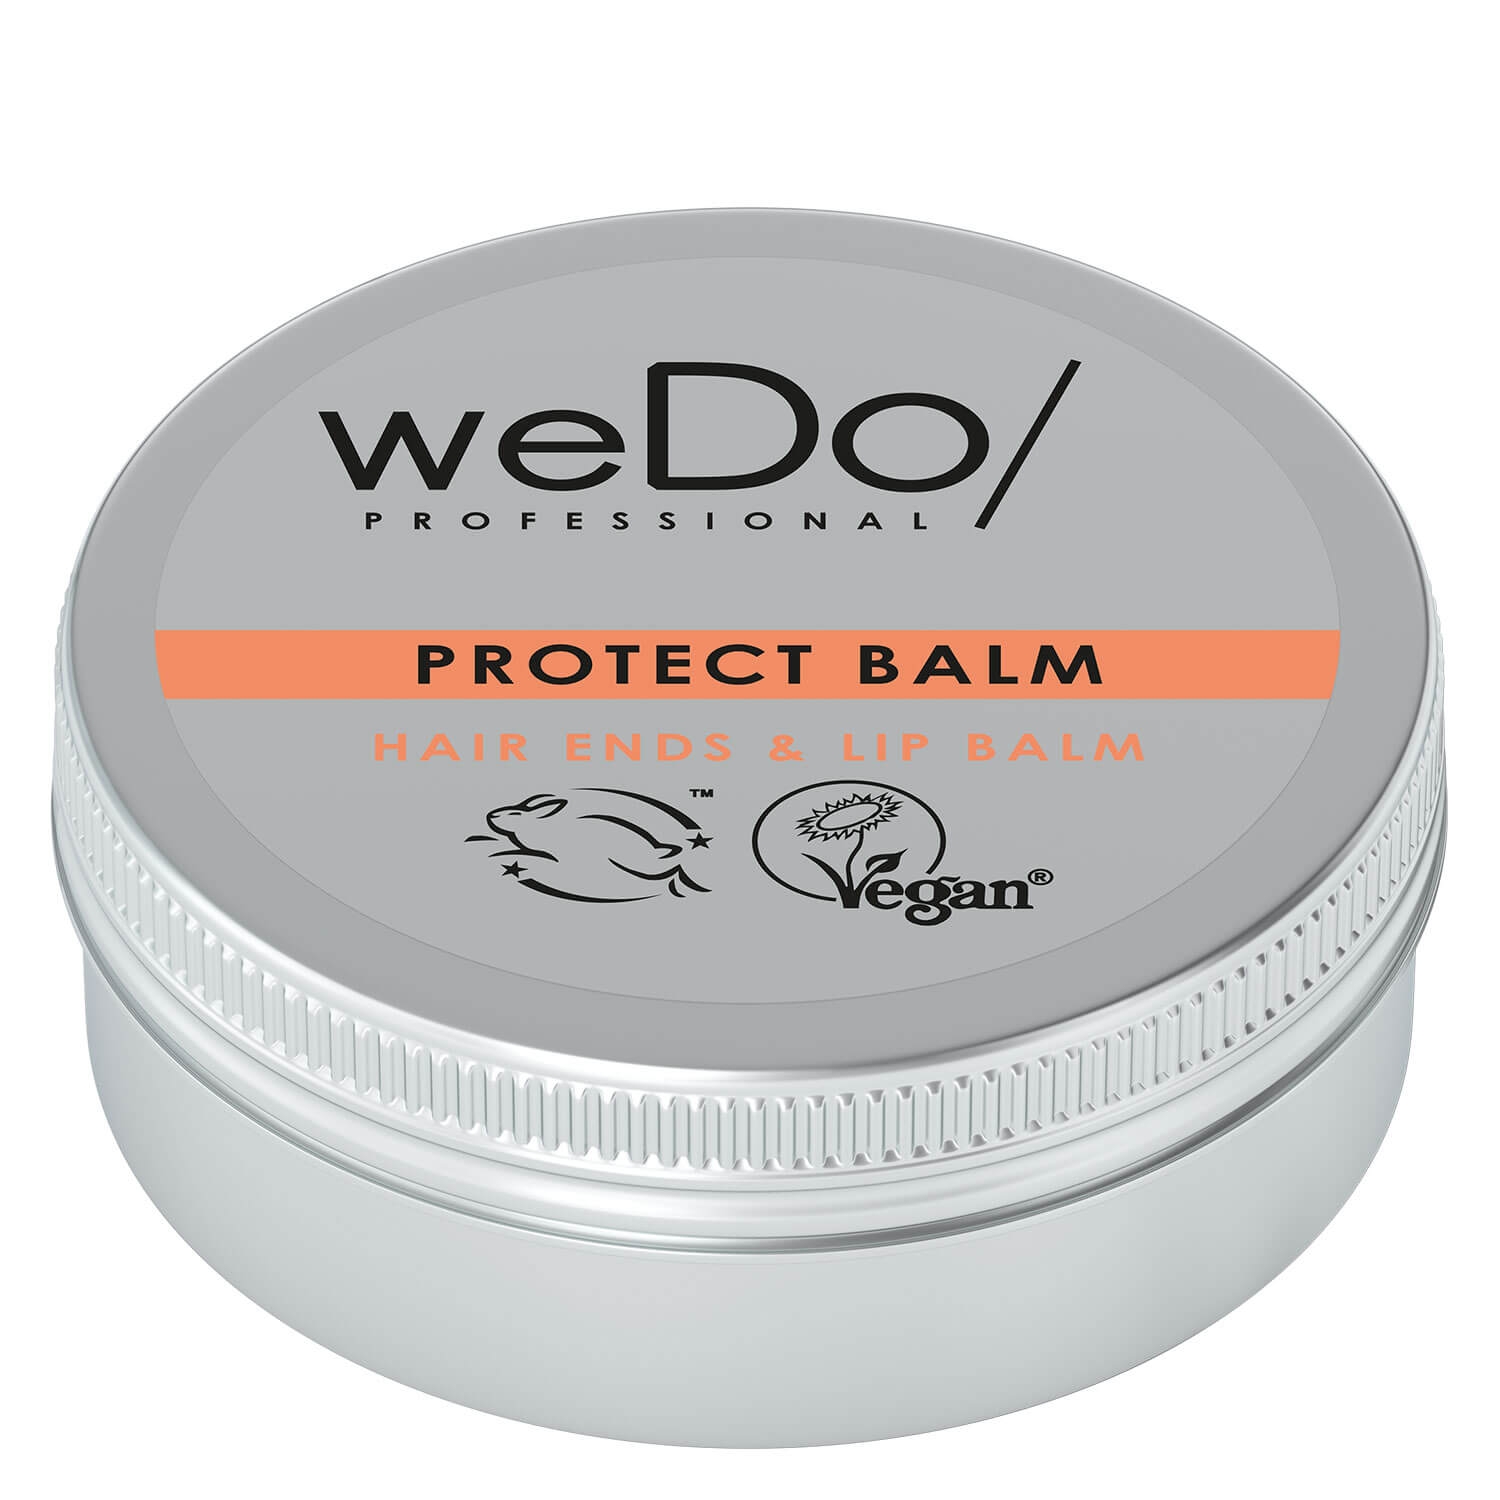 Produktbild von weDo/ - Protect Balm